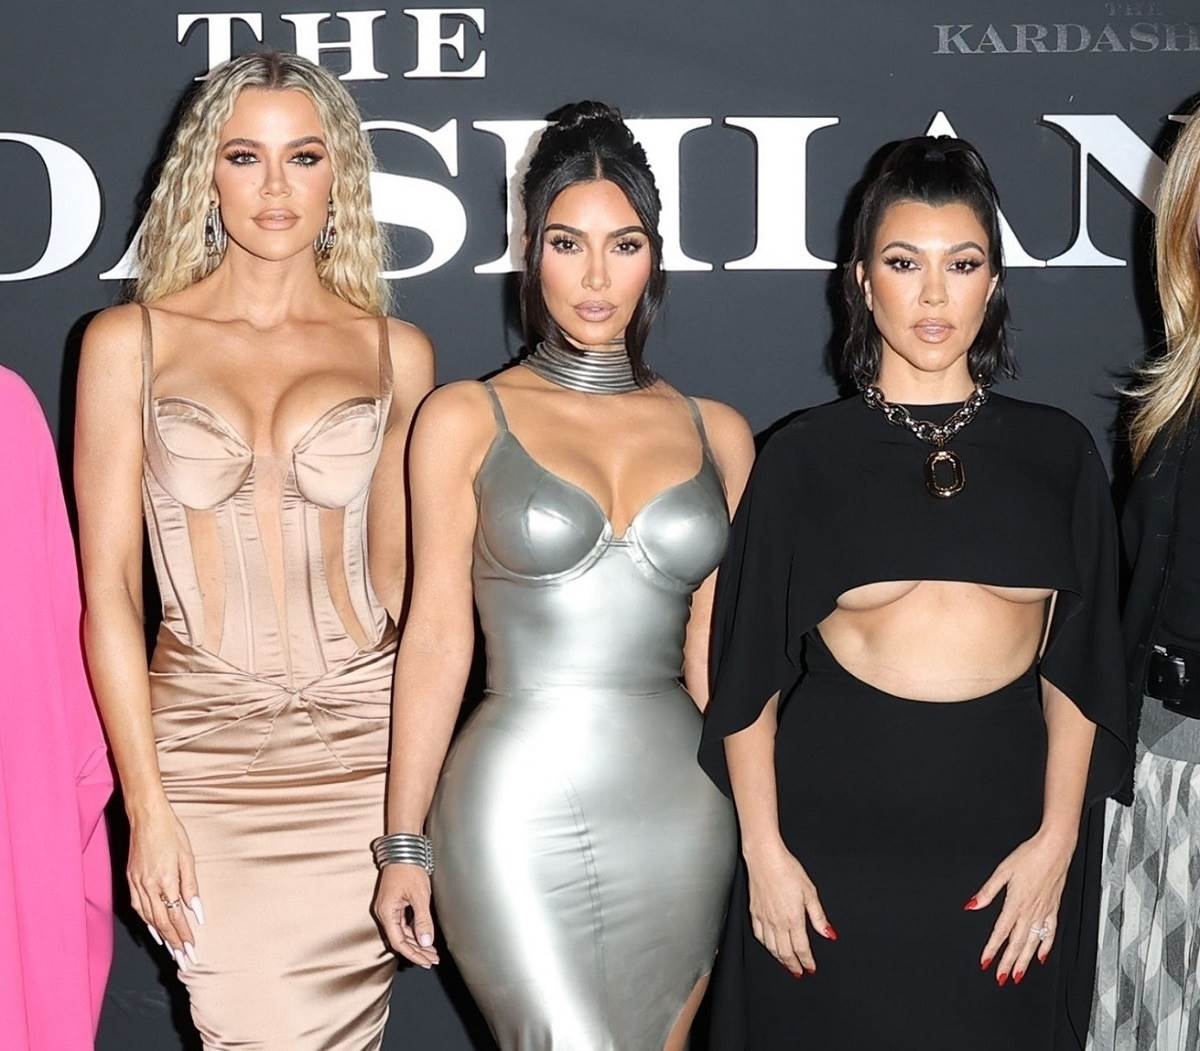  kardašijanke premijera nove sezone svog rijalitija "The Kardashians" 